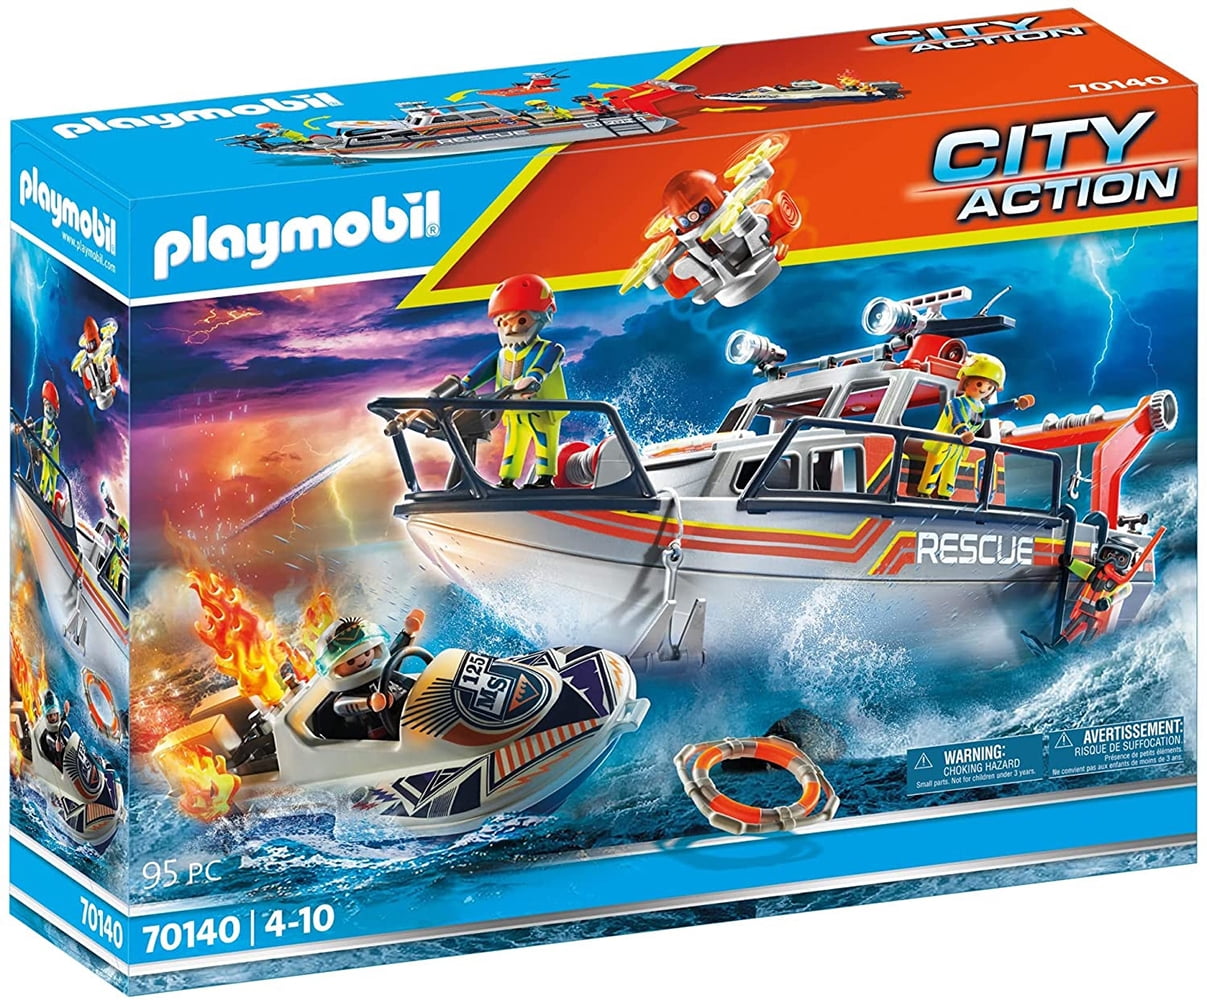 PLAYMOBIL Watercraft 70140 Building Set (8 Pieces) -